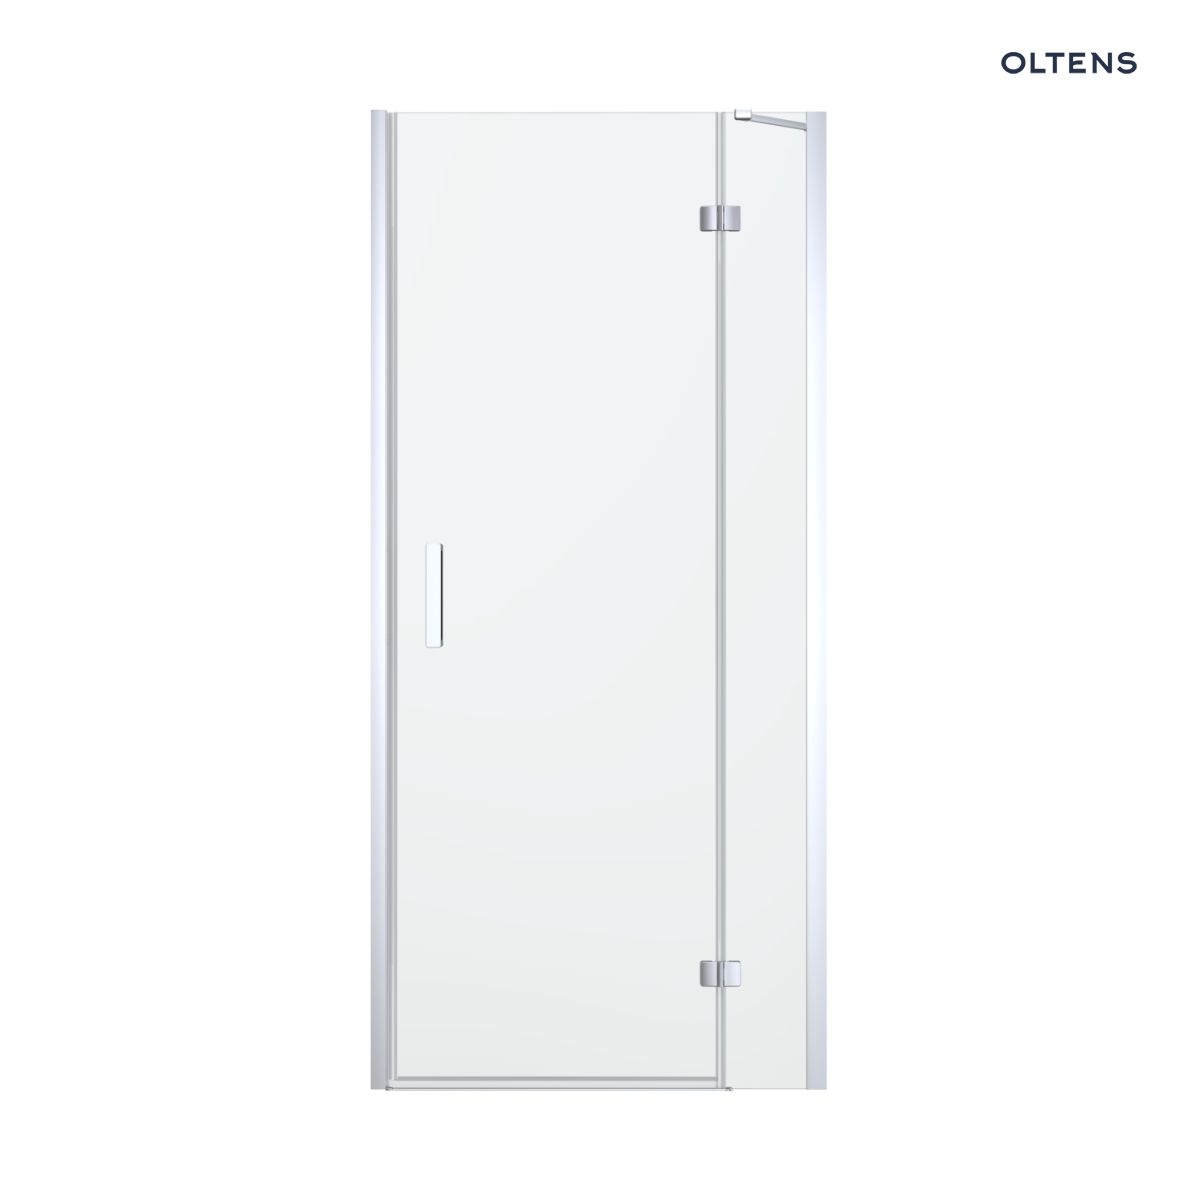 Oltens Disa drzwi prysznicowe 120 cm wnękowe szkło przezroczyste